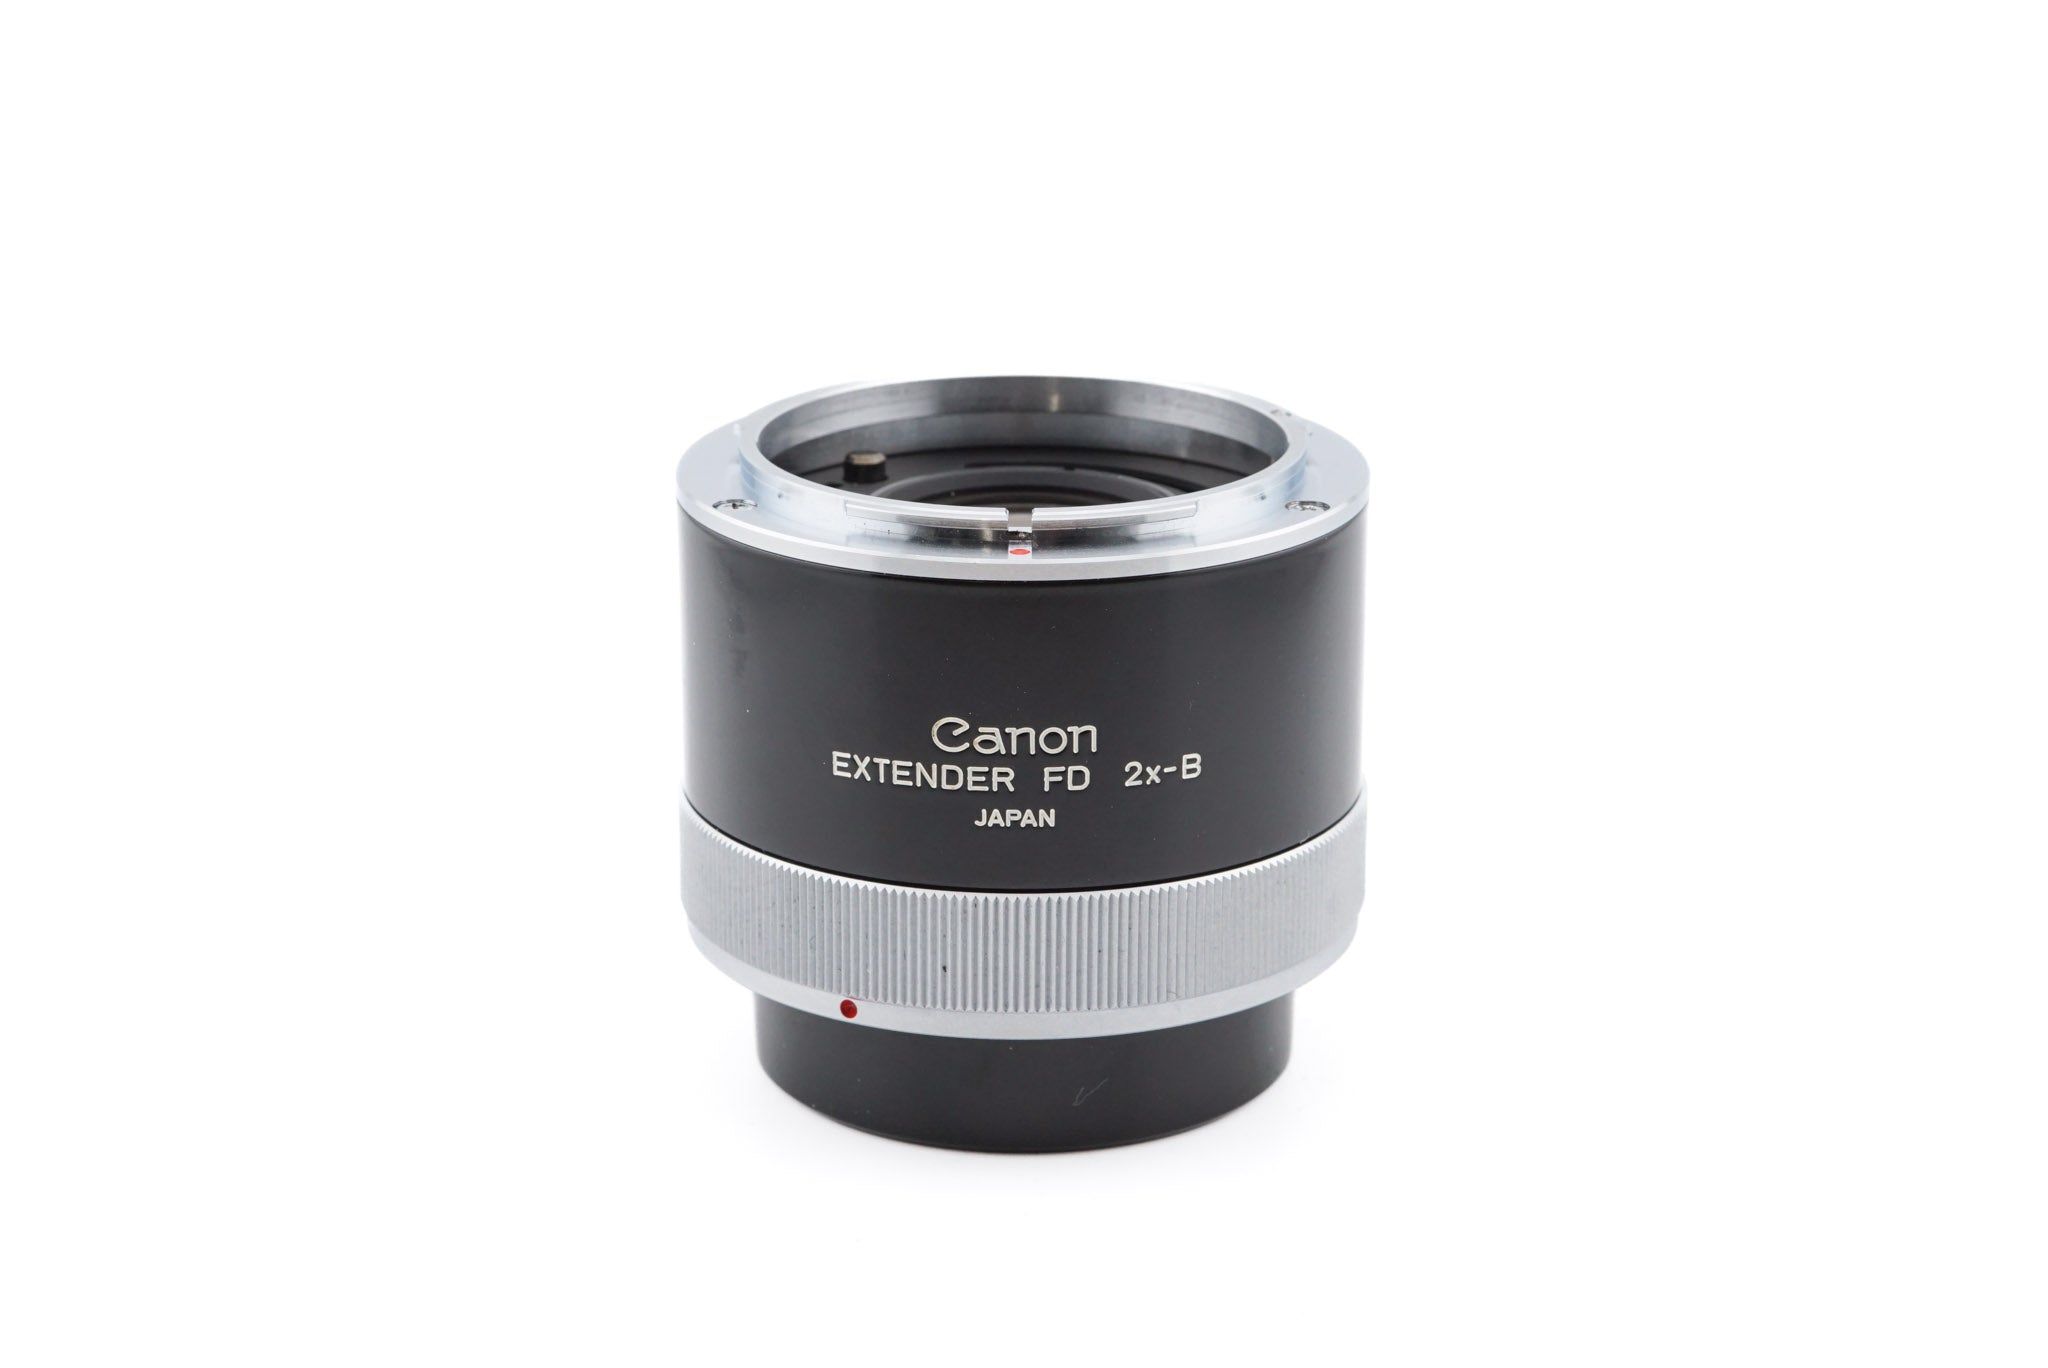 Canon 2X-B Extender FD – Kamerastore